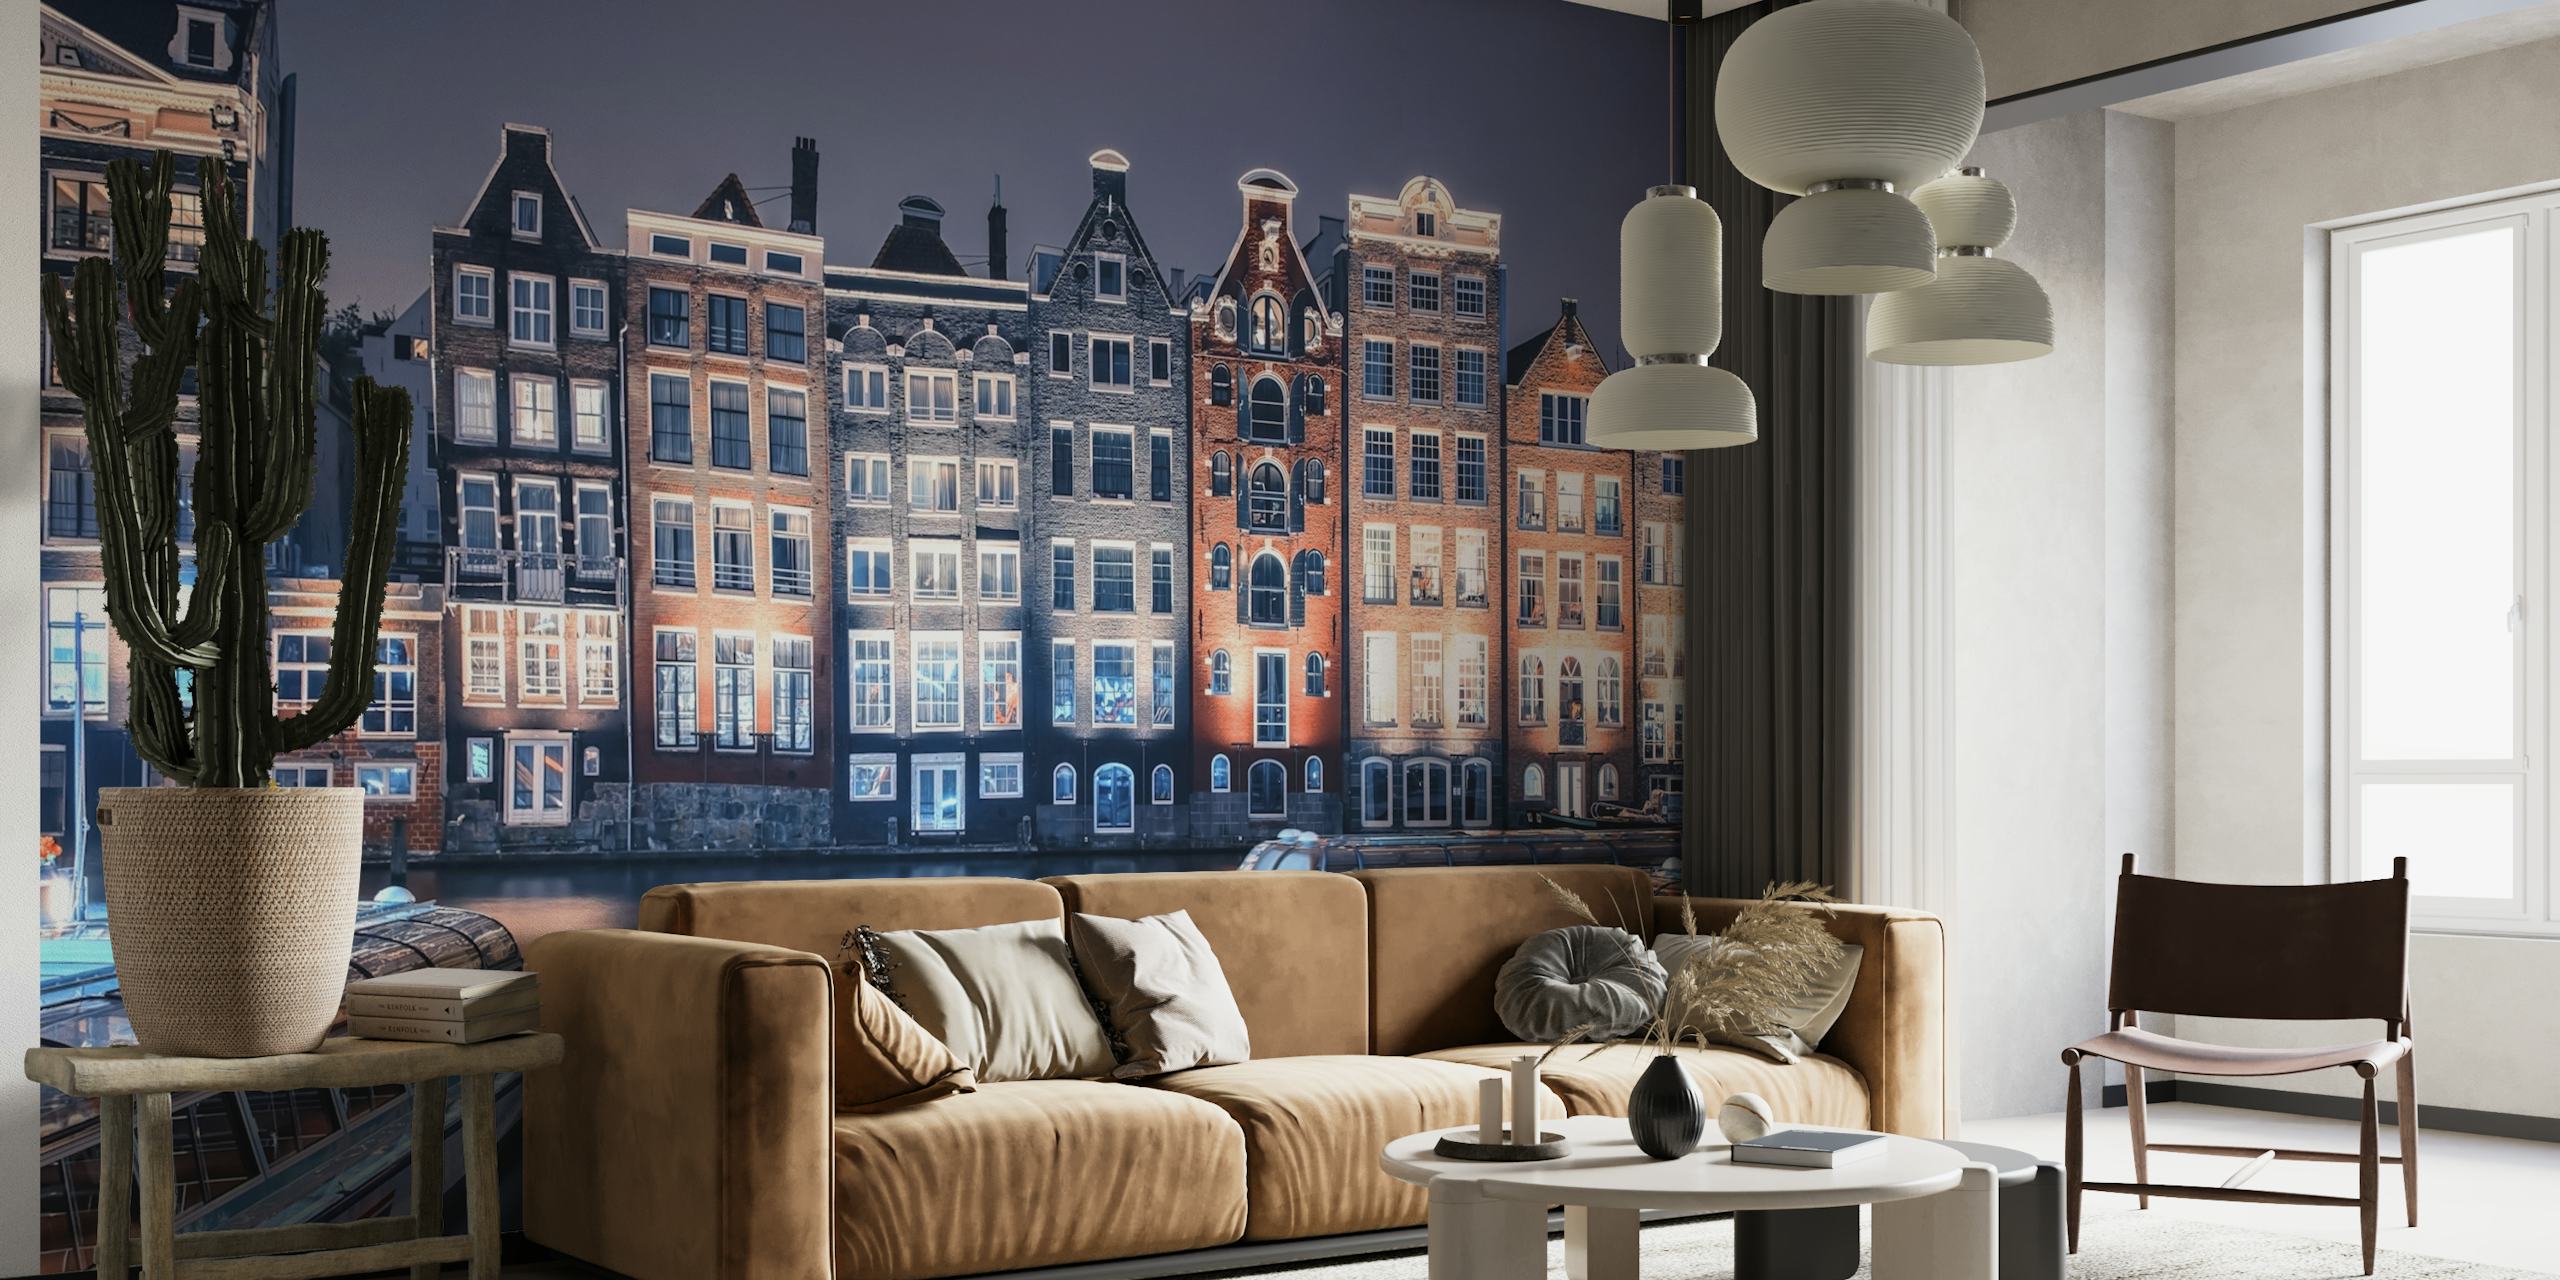 Nástěnná malba Damrak kanál s tradičními holandskými domy